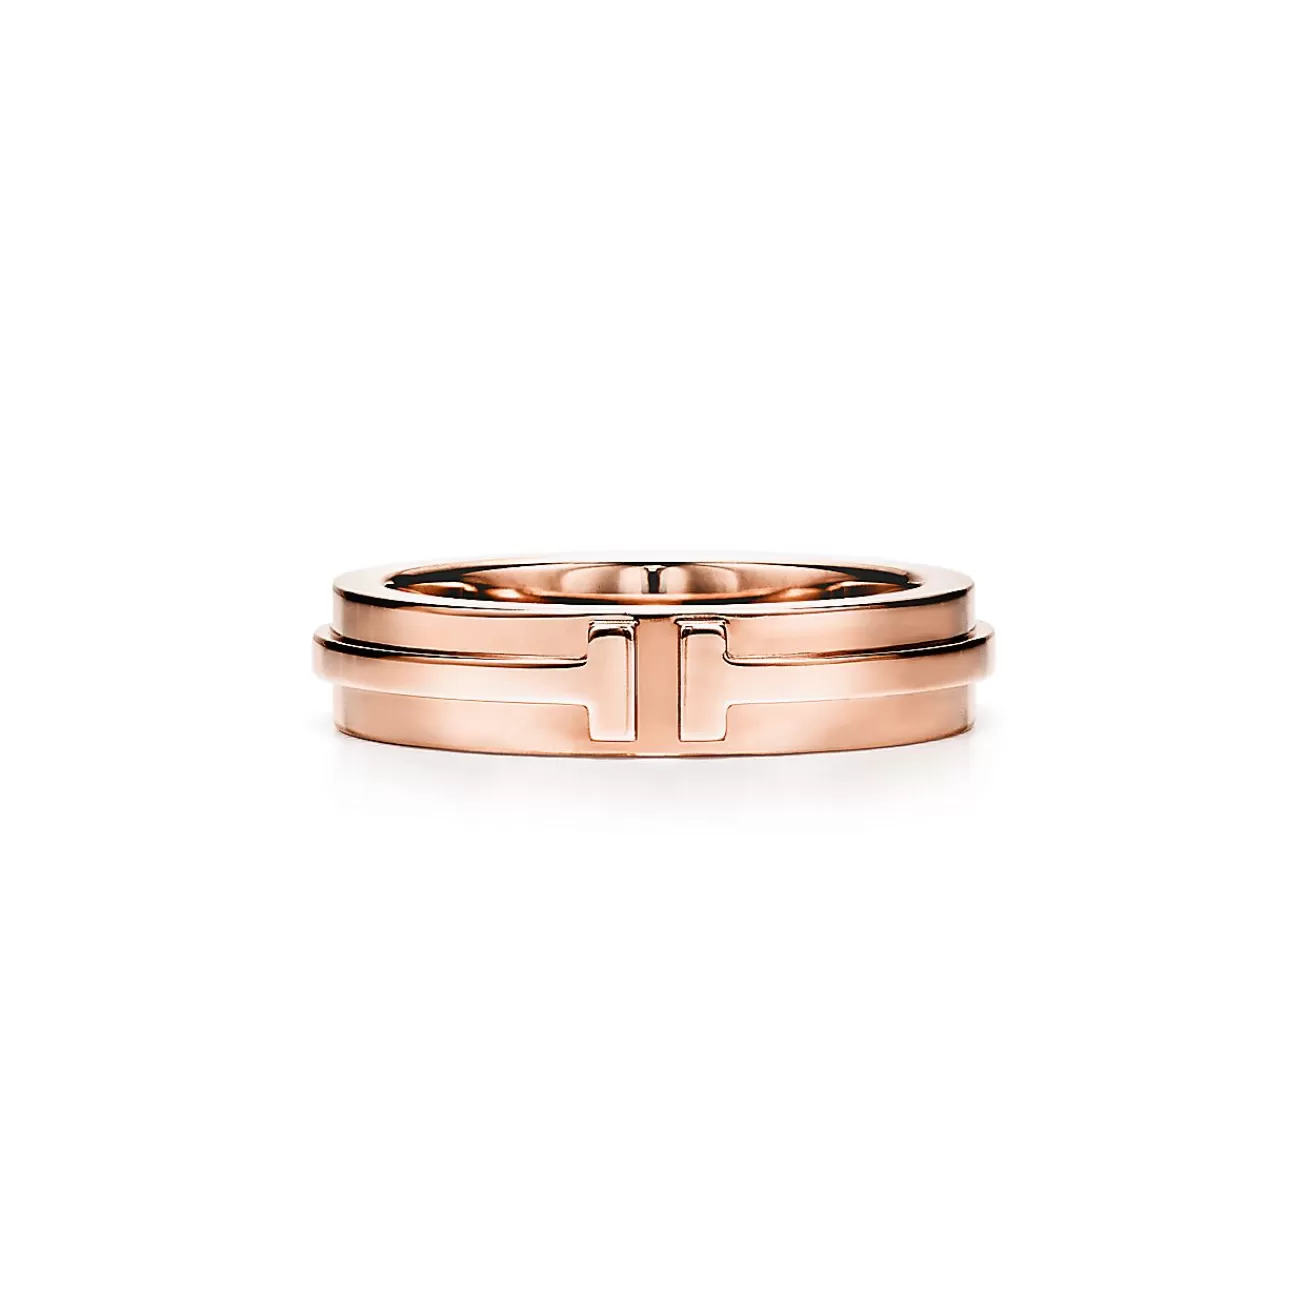 Tiffany & Co. Tiffany T narrow ring in 18k rose gold, 4.5 mm wide. | ^Women Rings | Men's Jewelry